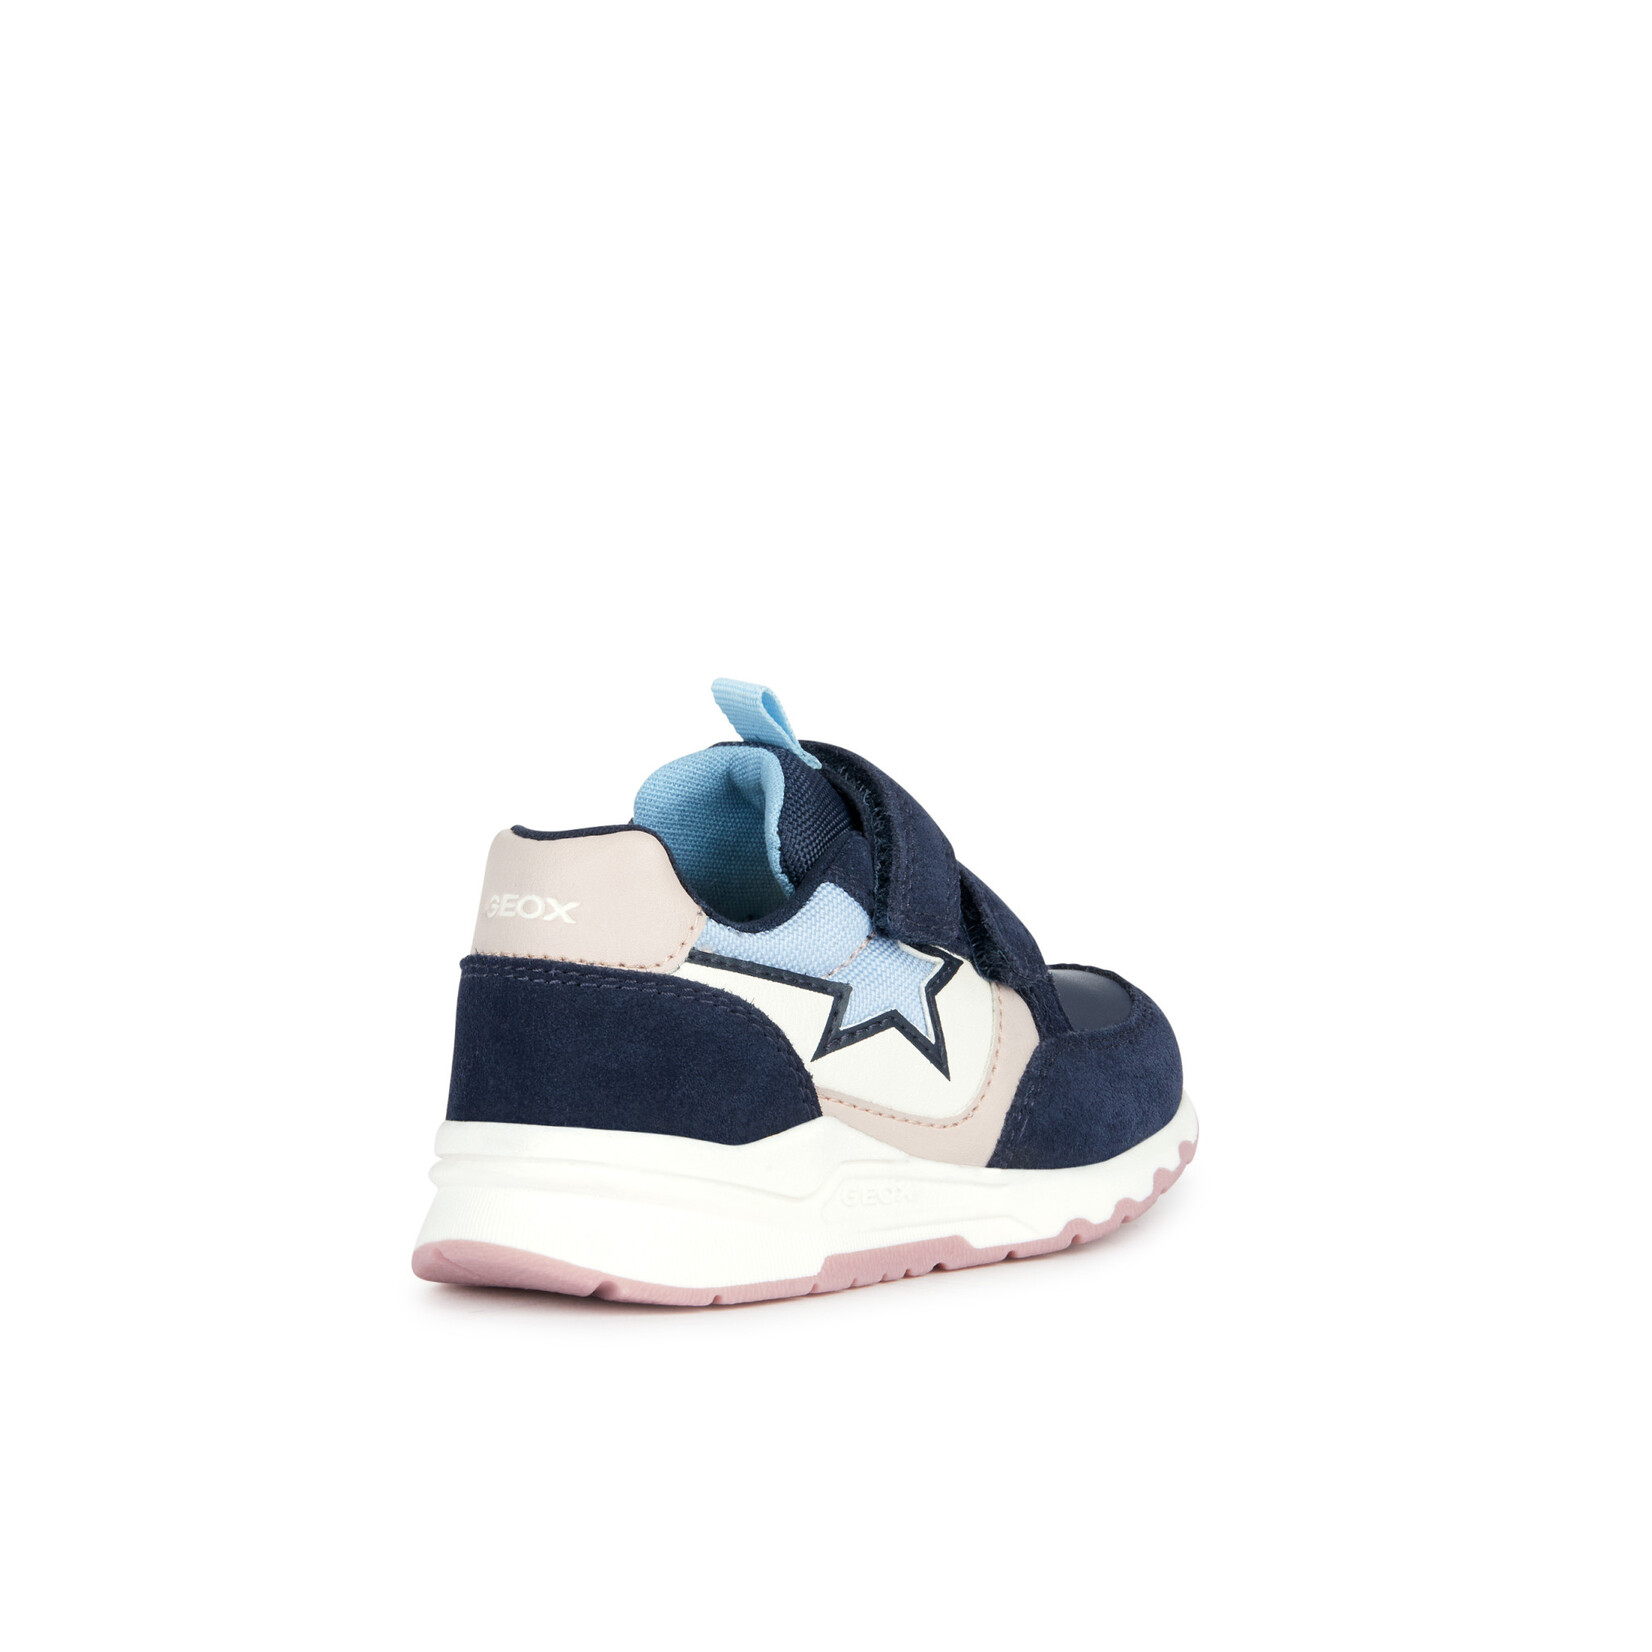 Geox GEOX - Chaussures de sport 'B. PYRIP - Suede+Cuir Synt.' - Marine foncé/Rose pâle